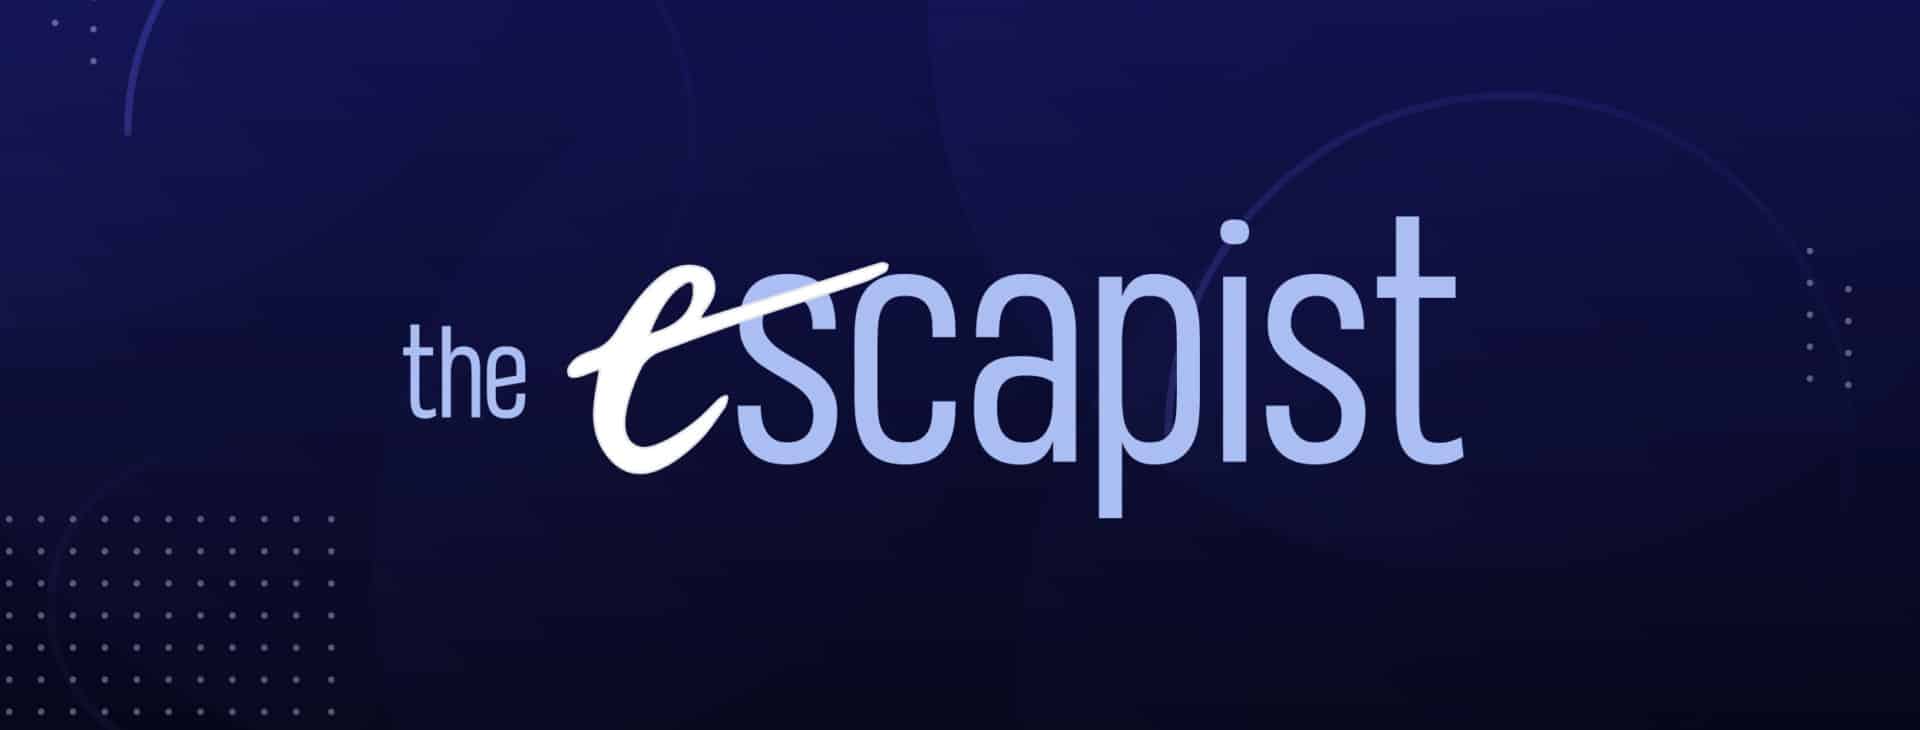 the escapist magazine